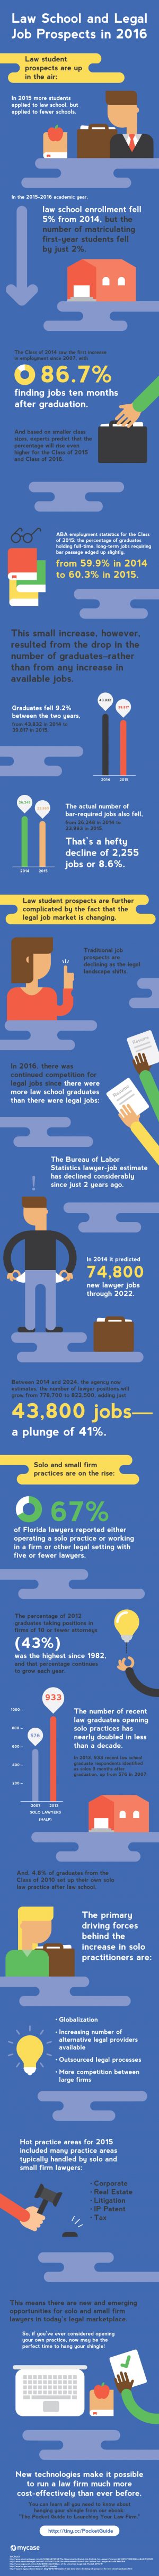 Legal-Job-Prospects-5